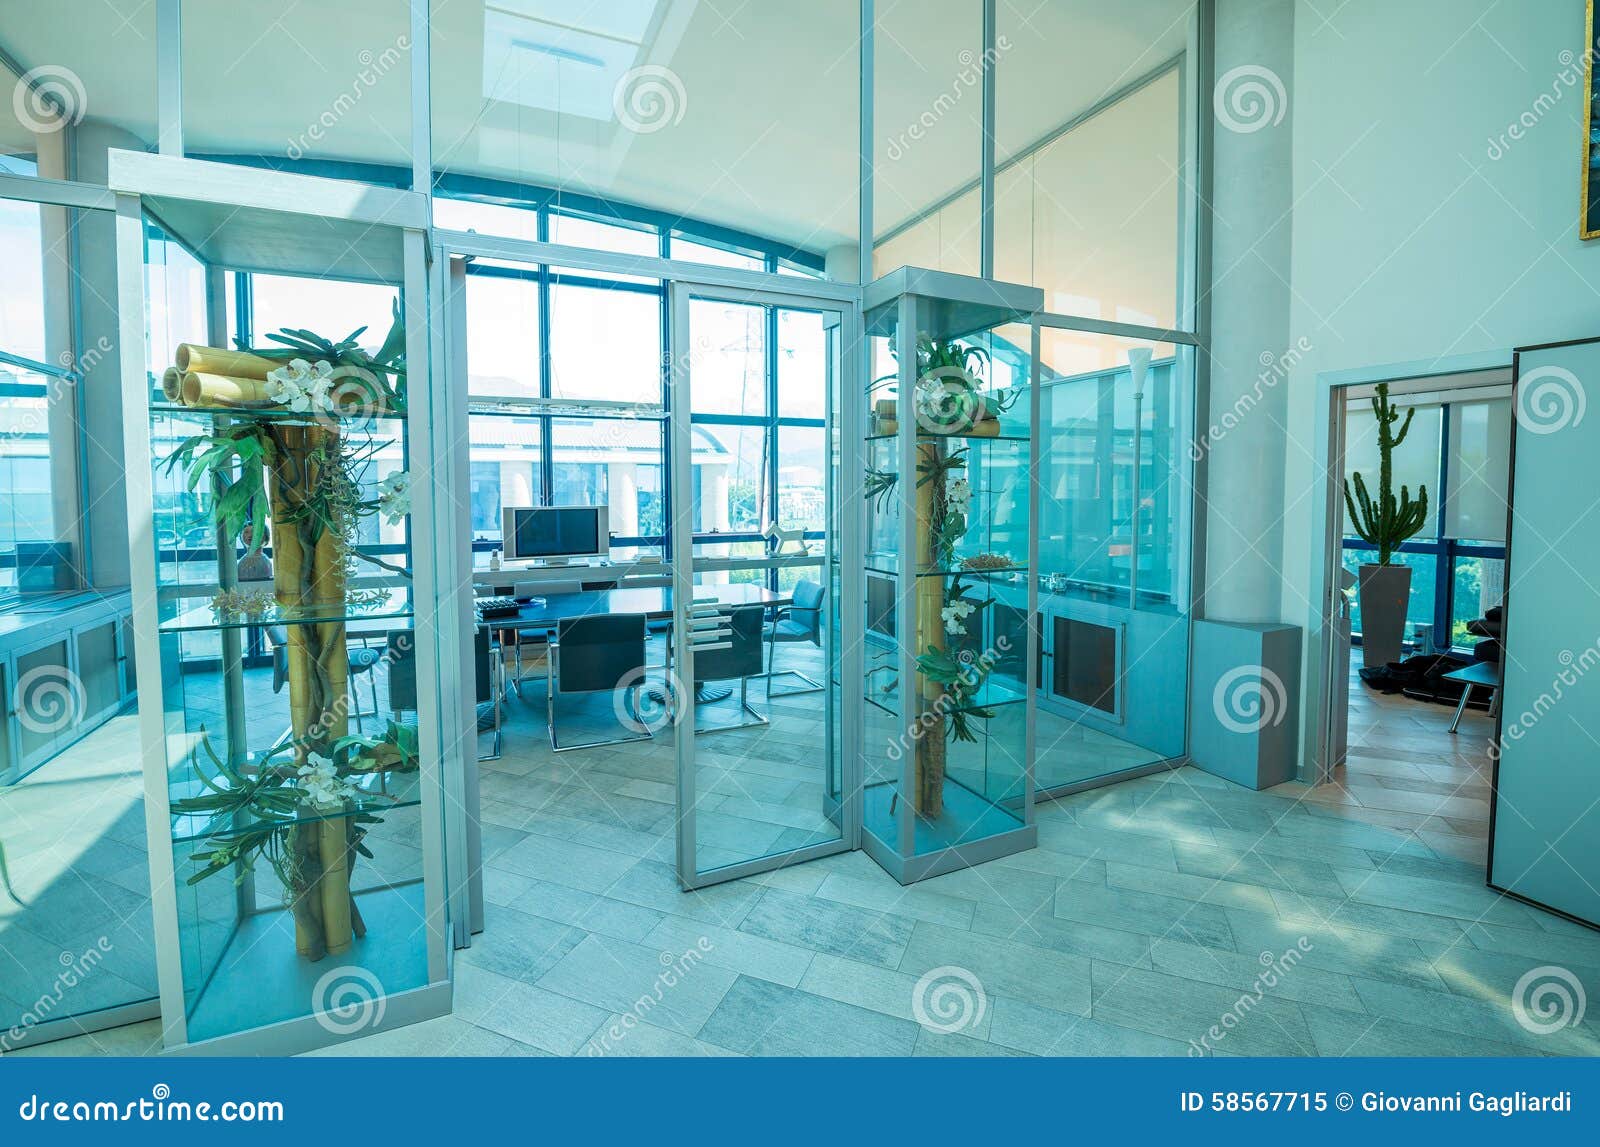 Office Glass Door Design